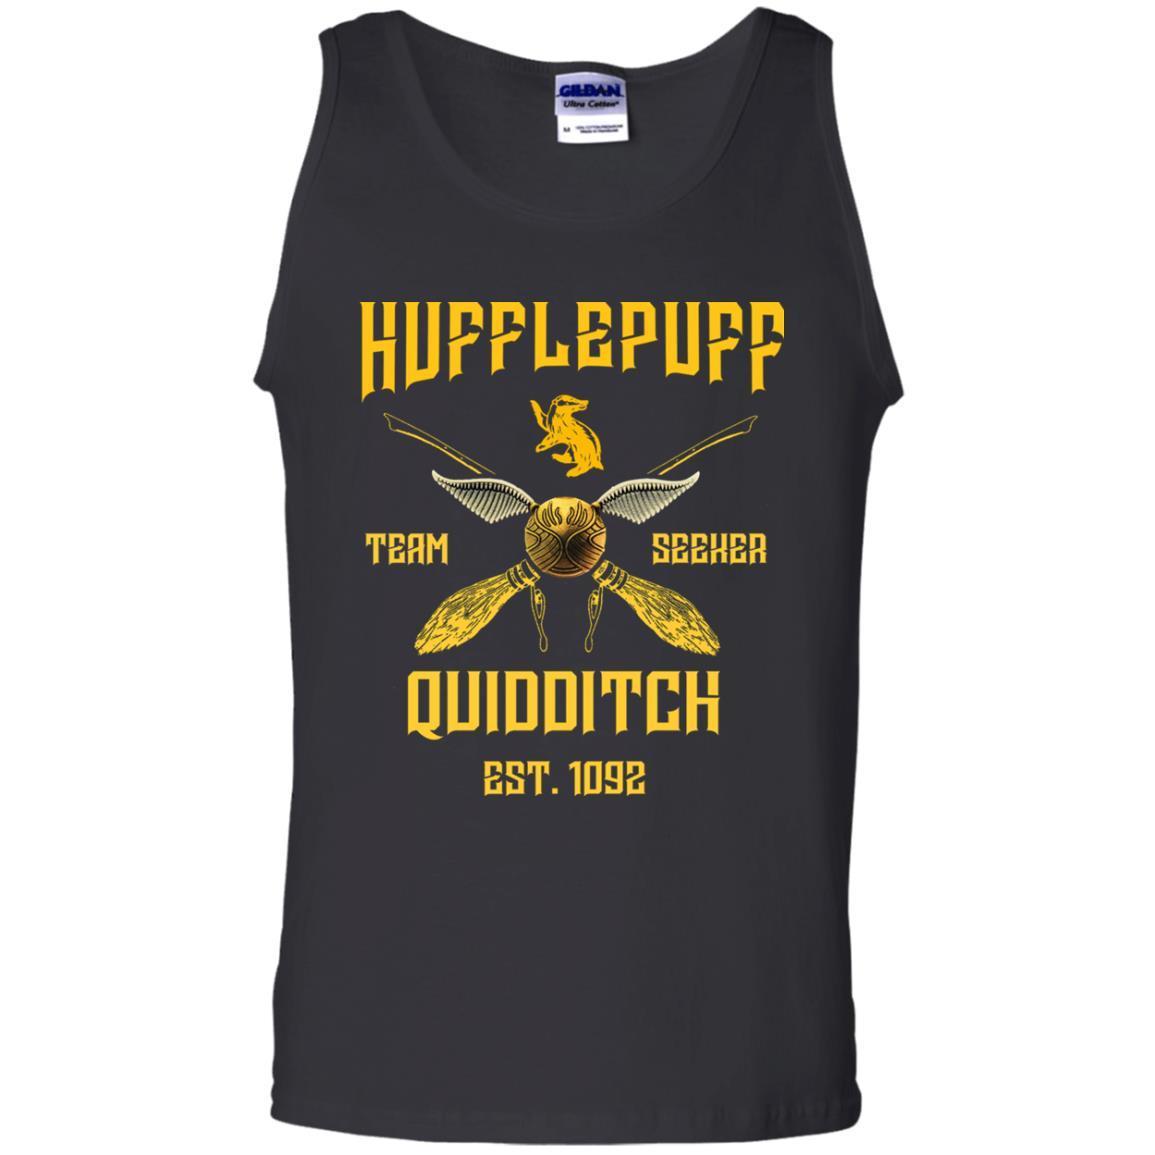 Hufflepuff Quidditch Team Seeker Est 1092 Harry Potter Shirt Black S 